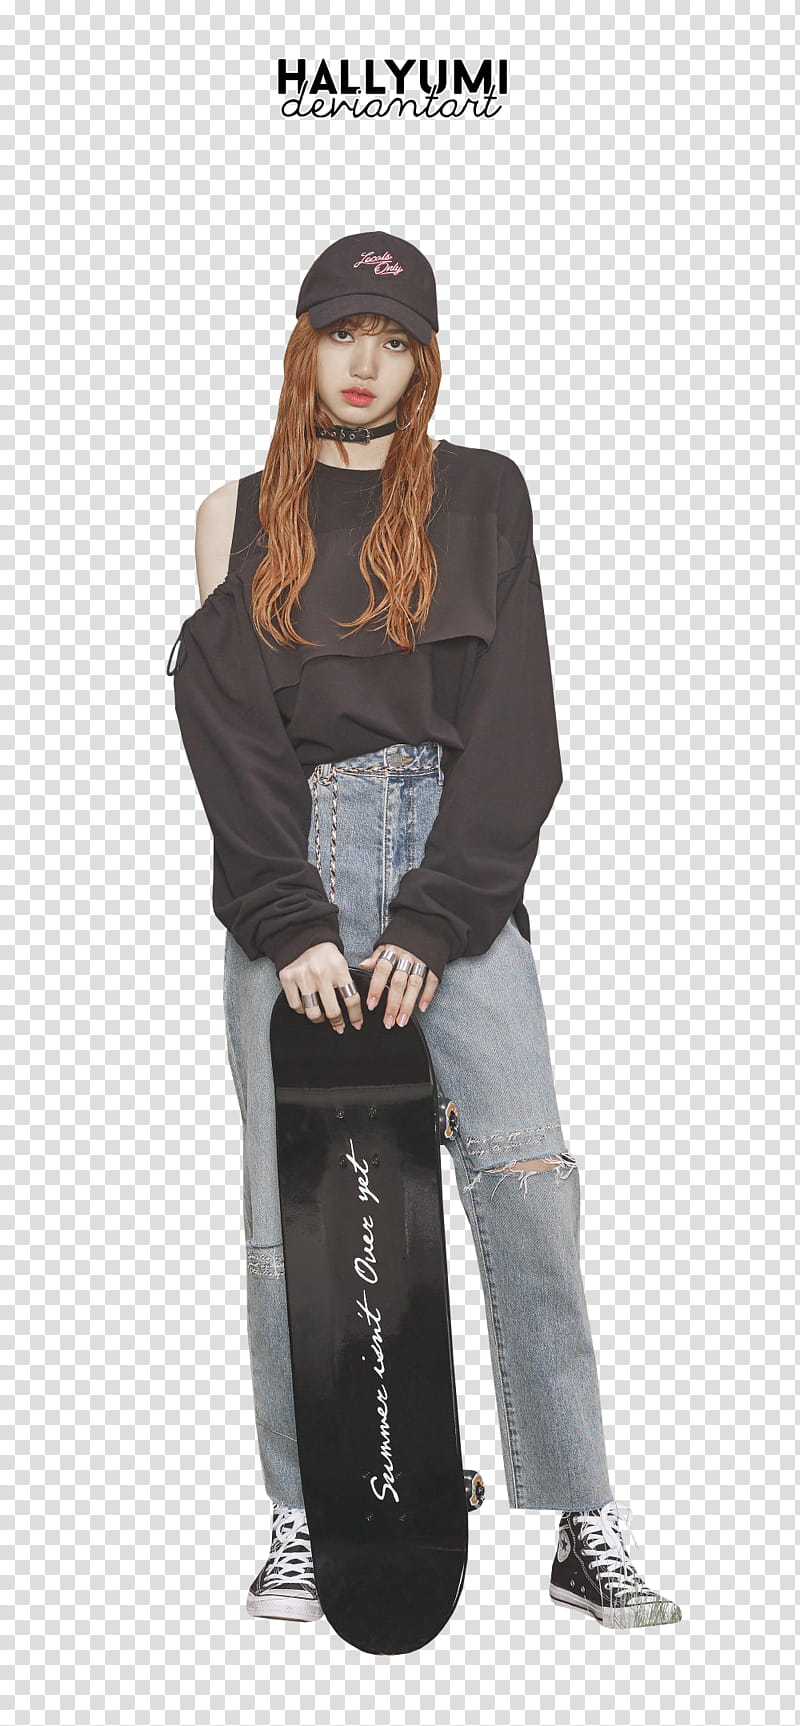 Lisa, Blackpink member standing while holding black skateboard transparent background PNG clipart